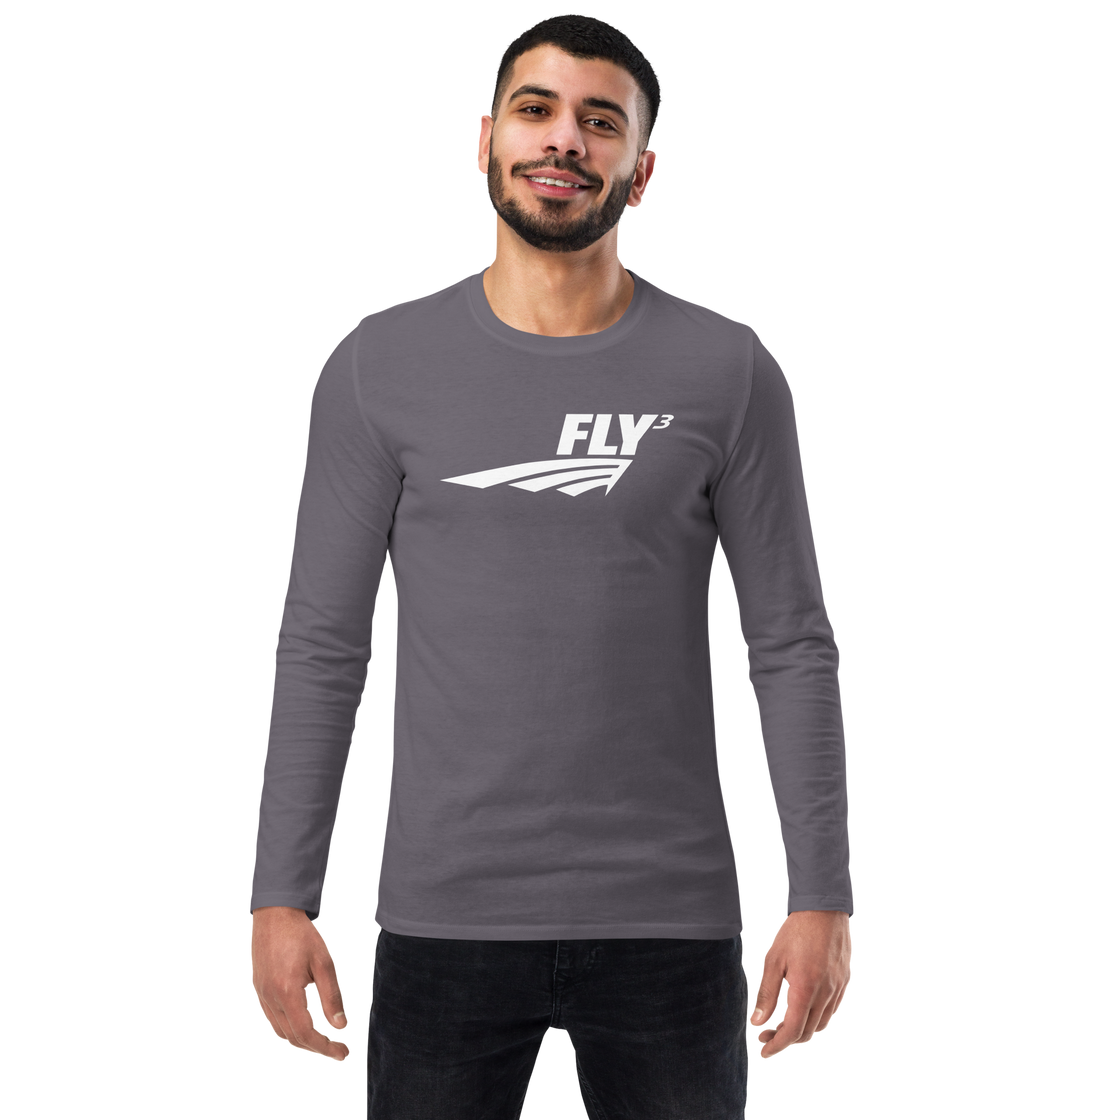 FLY³ long sleeve shirt | Flycube